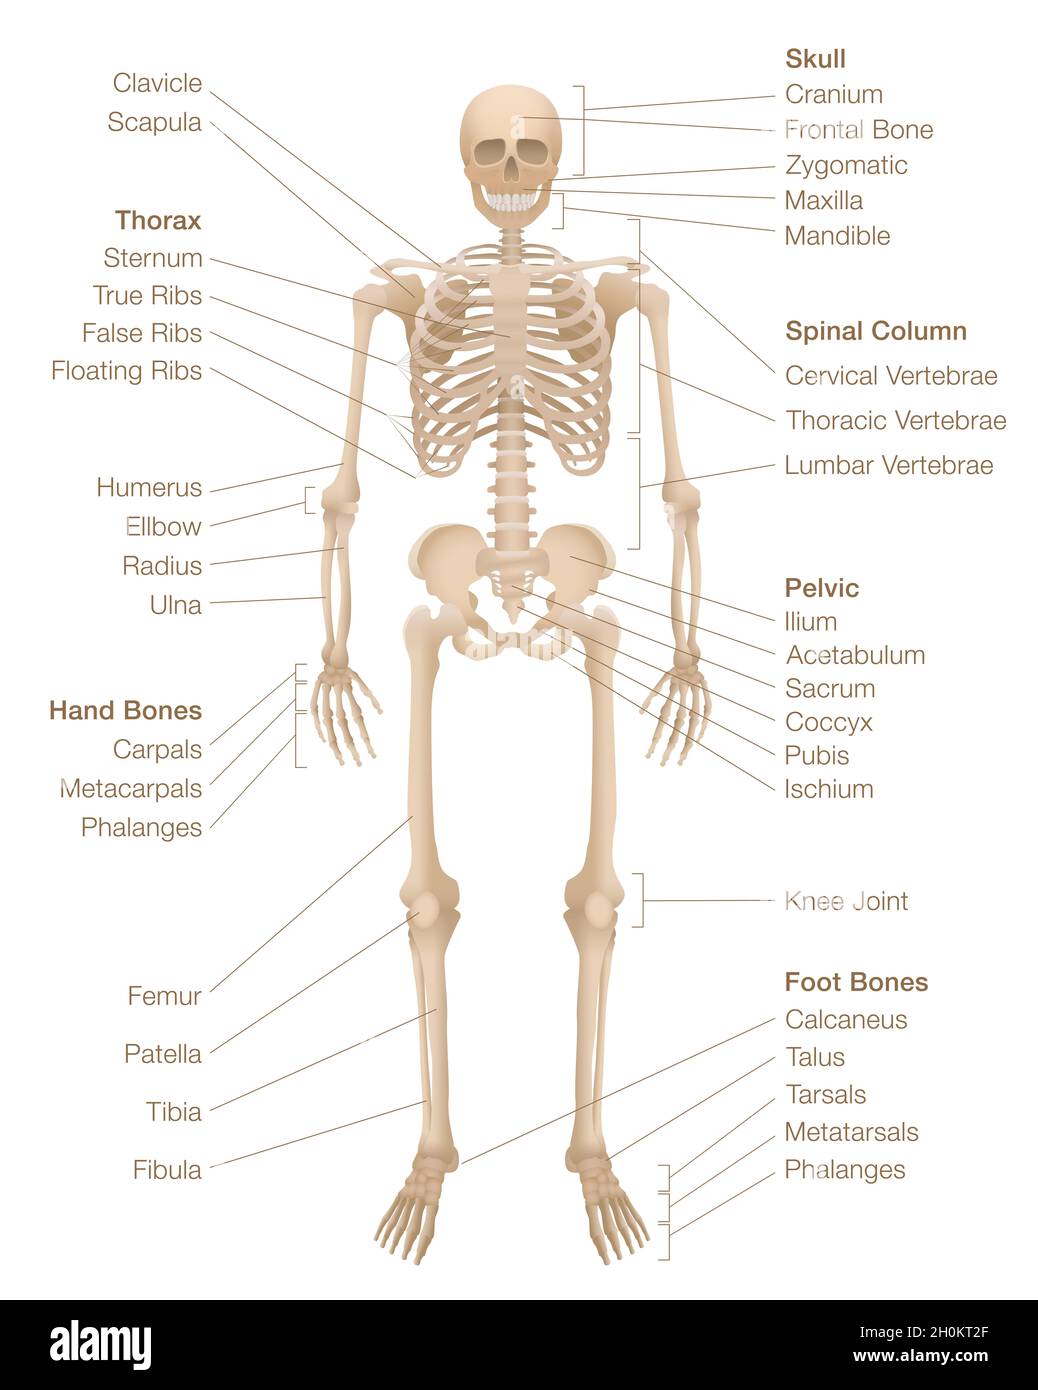 Gráfico de esqueleto humano. Sistema esquelético etiquetado con huesos con nombre, cráneo, columna vertebral, pelvis, tórax, costillas, esternón, huesos de manos y pies, clavícula. Foto de stock